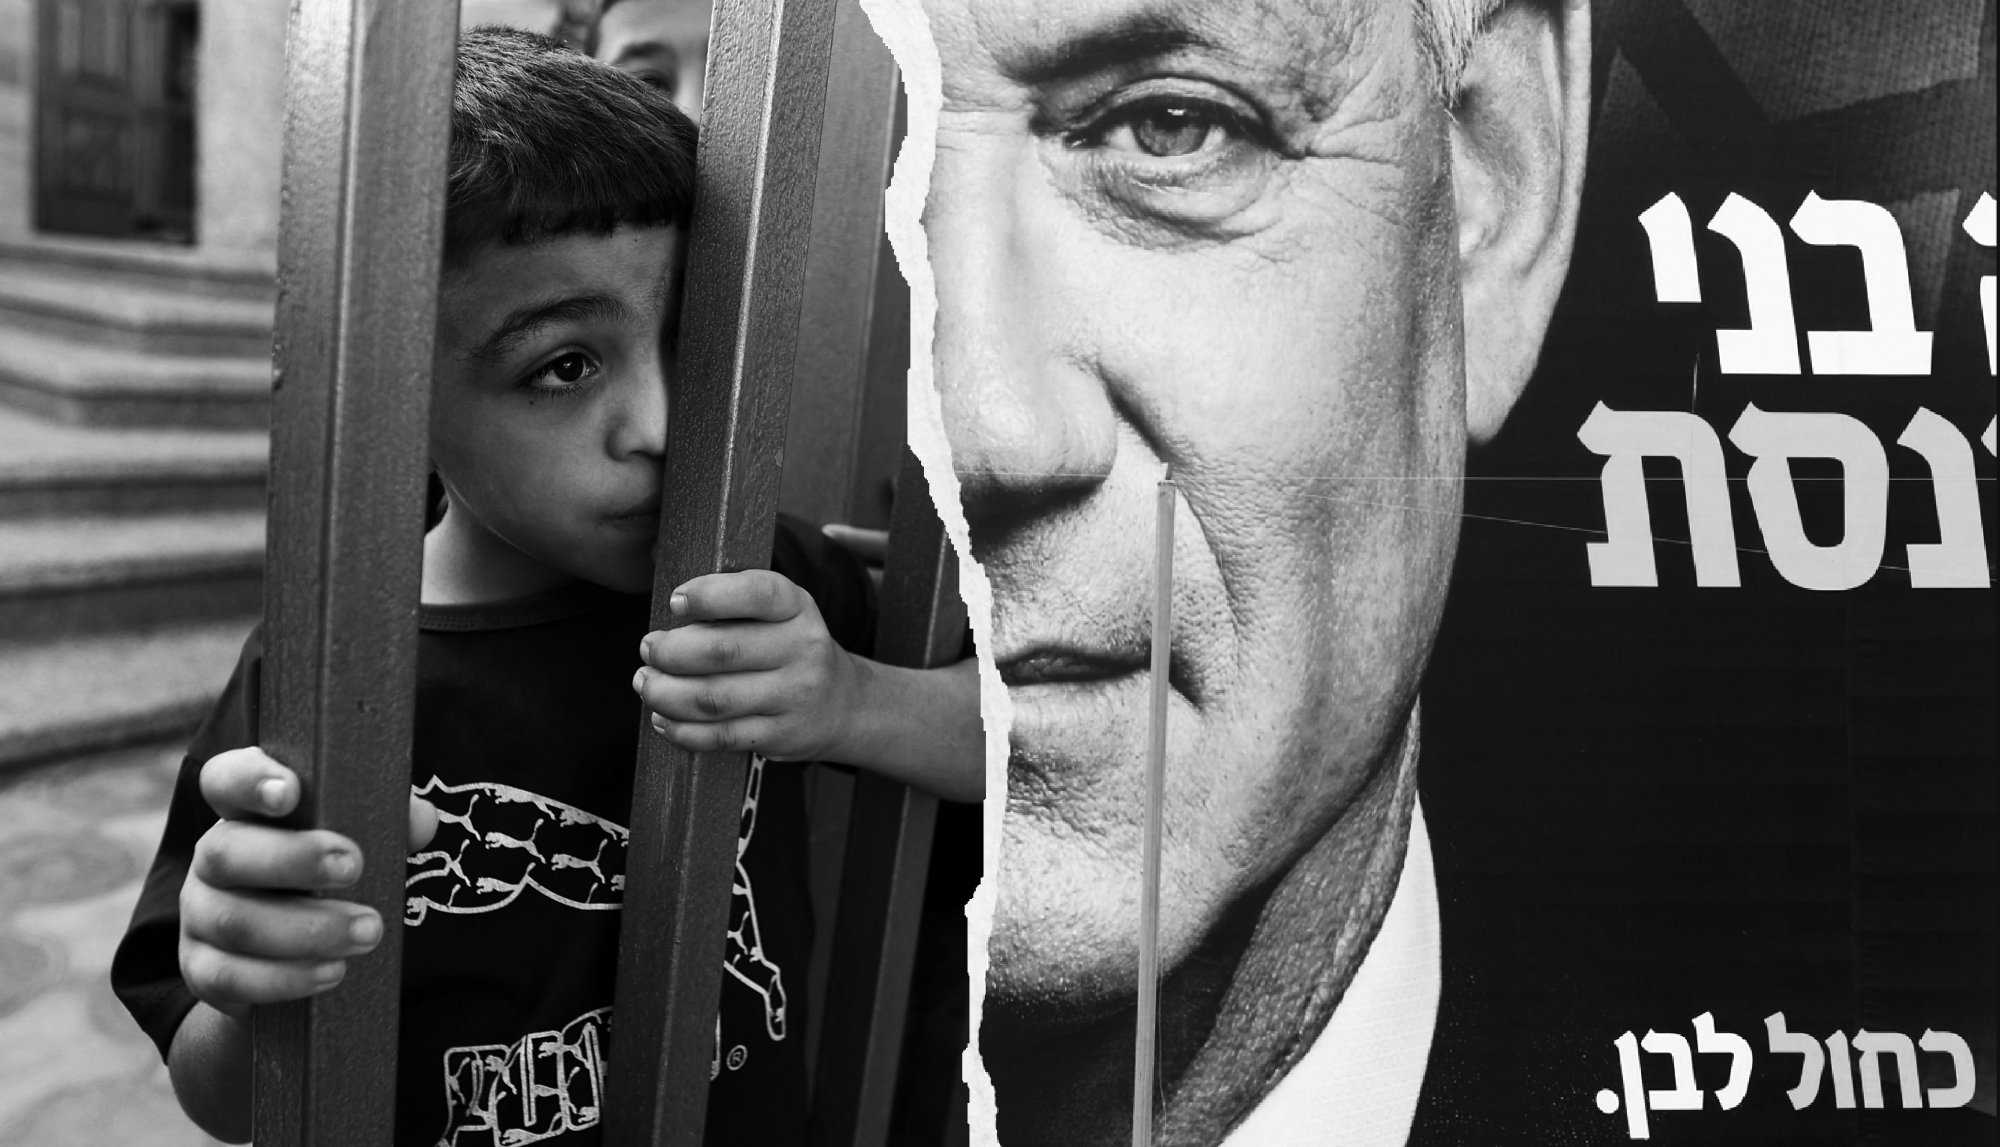 «Θα σας προκαλέσουμε μεγαλύτερο Ολοκαύτωμα!» - Ατάκες Ισραηλινών που άφησαν άφωνη τη διεθνή κοινότητα